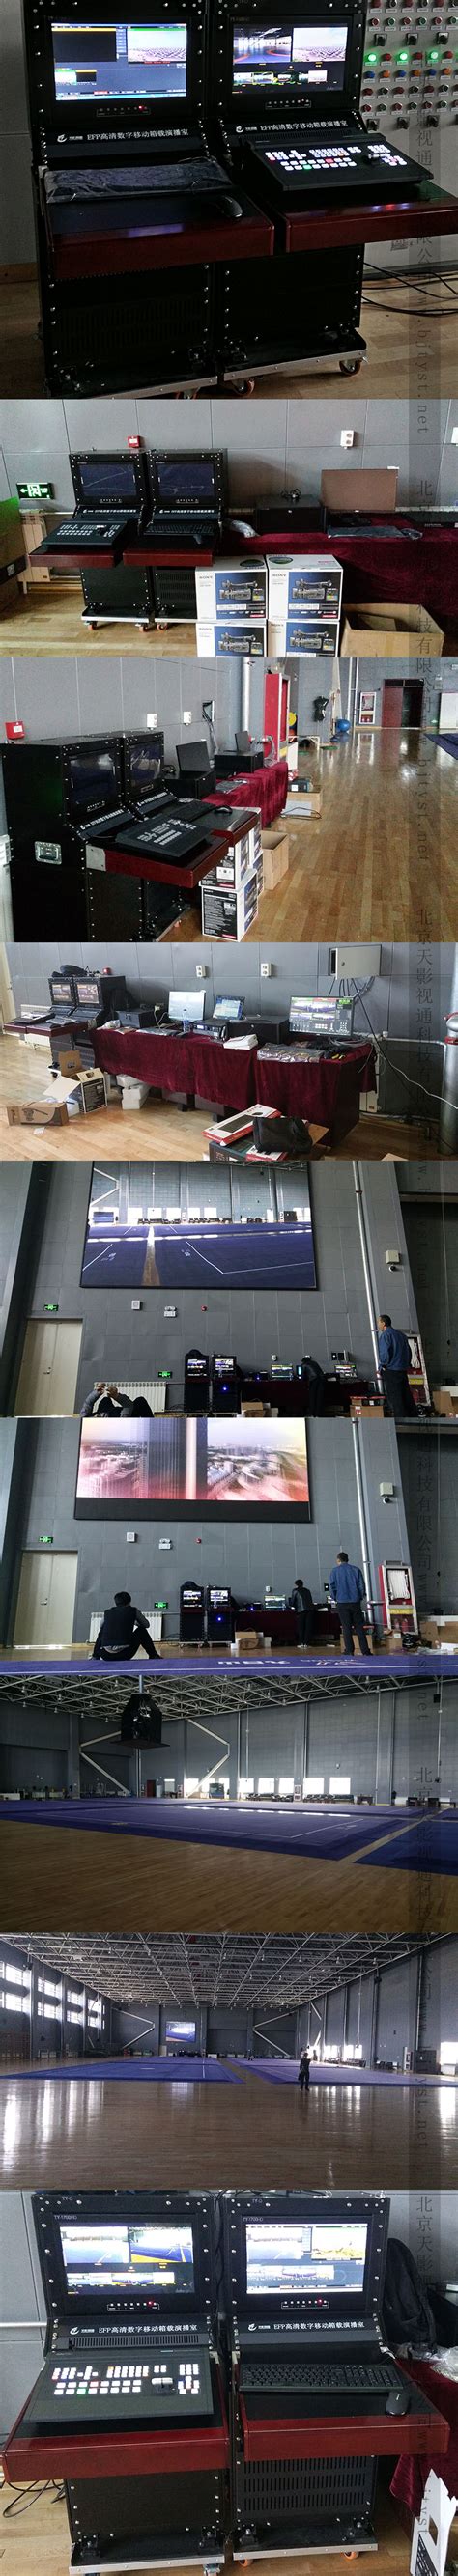 宁夏体育运动训练管理中心-北京天影视通科技有限公司